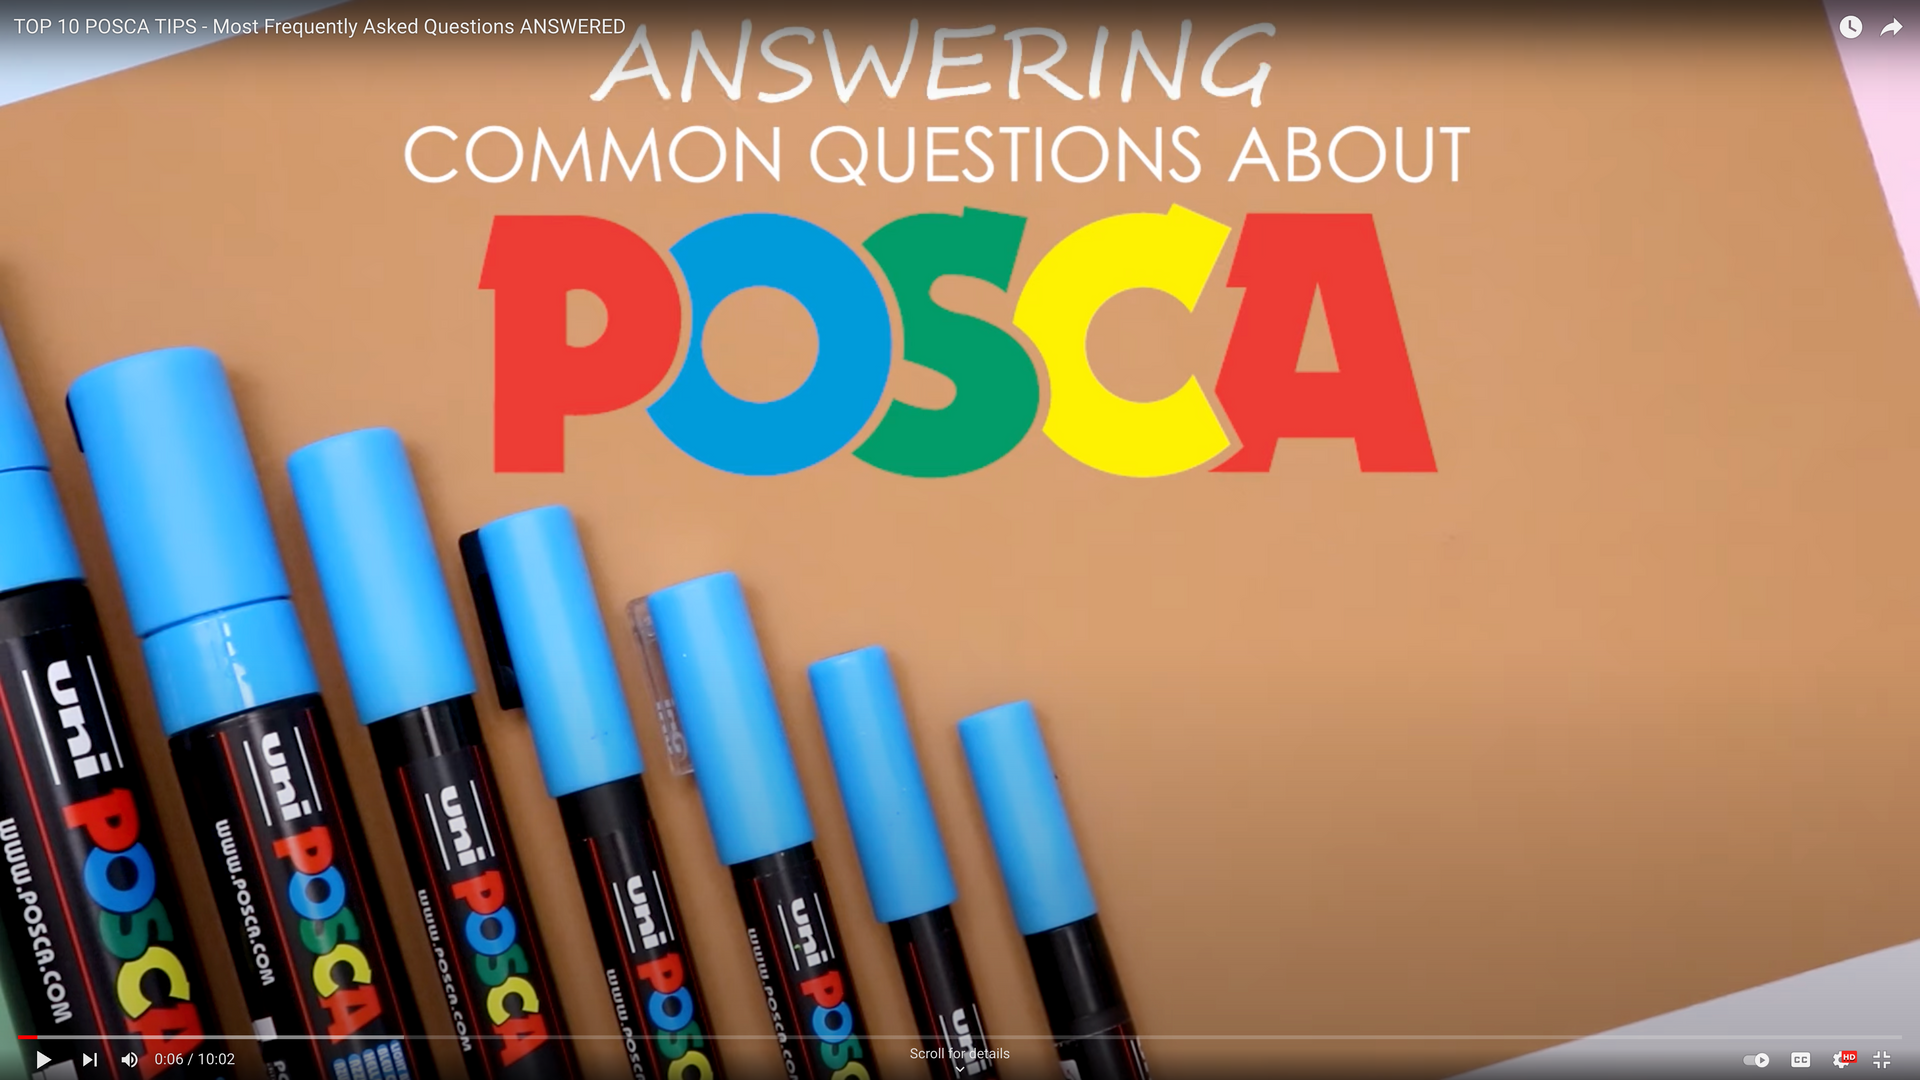 Homepage - Posca - Posca